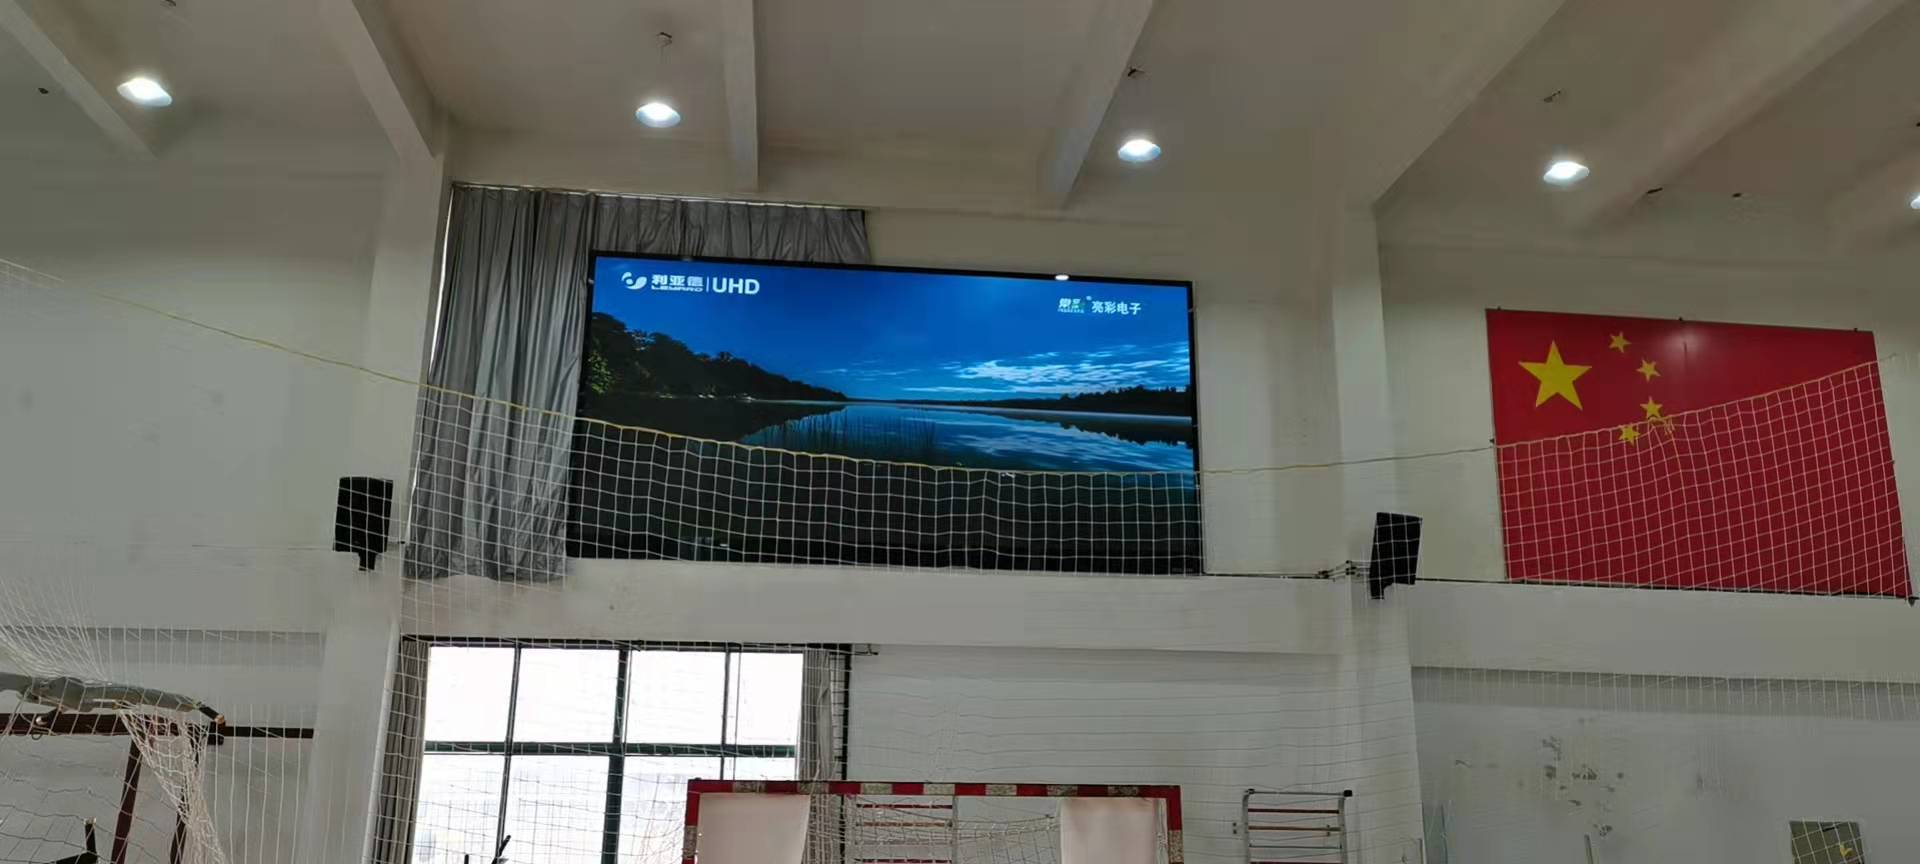 Jin Lixiang GXY3 display screen of a school in Changzhou